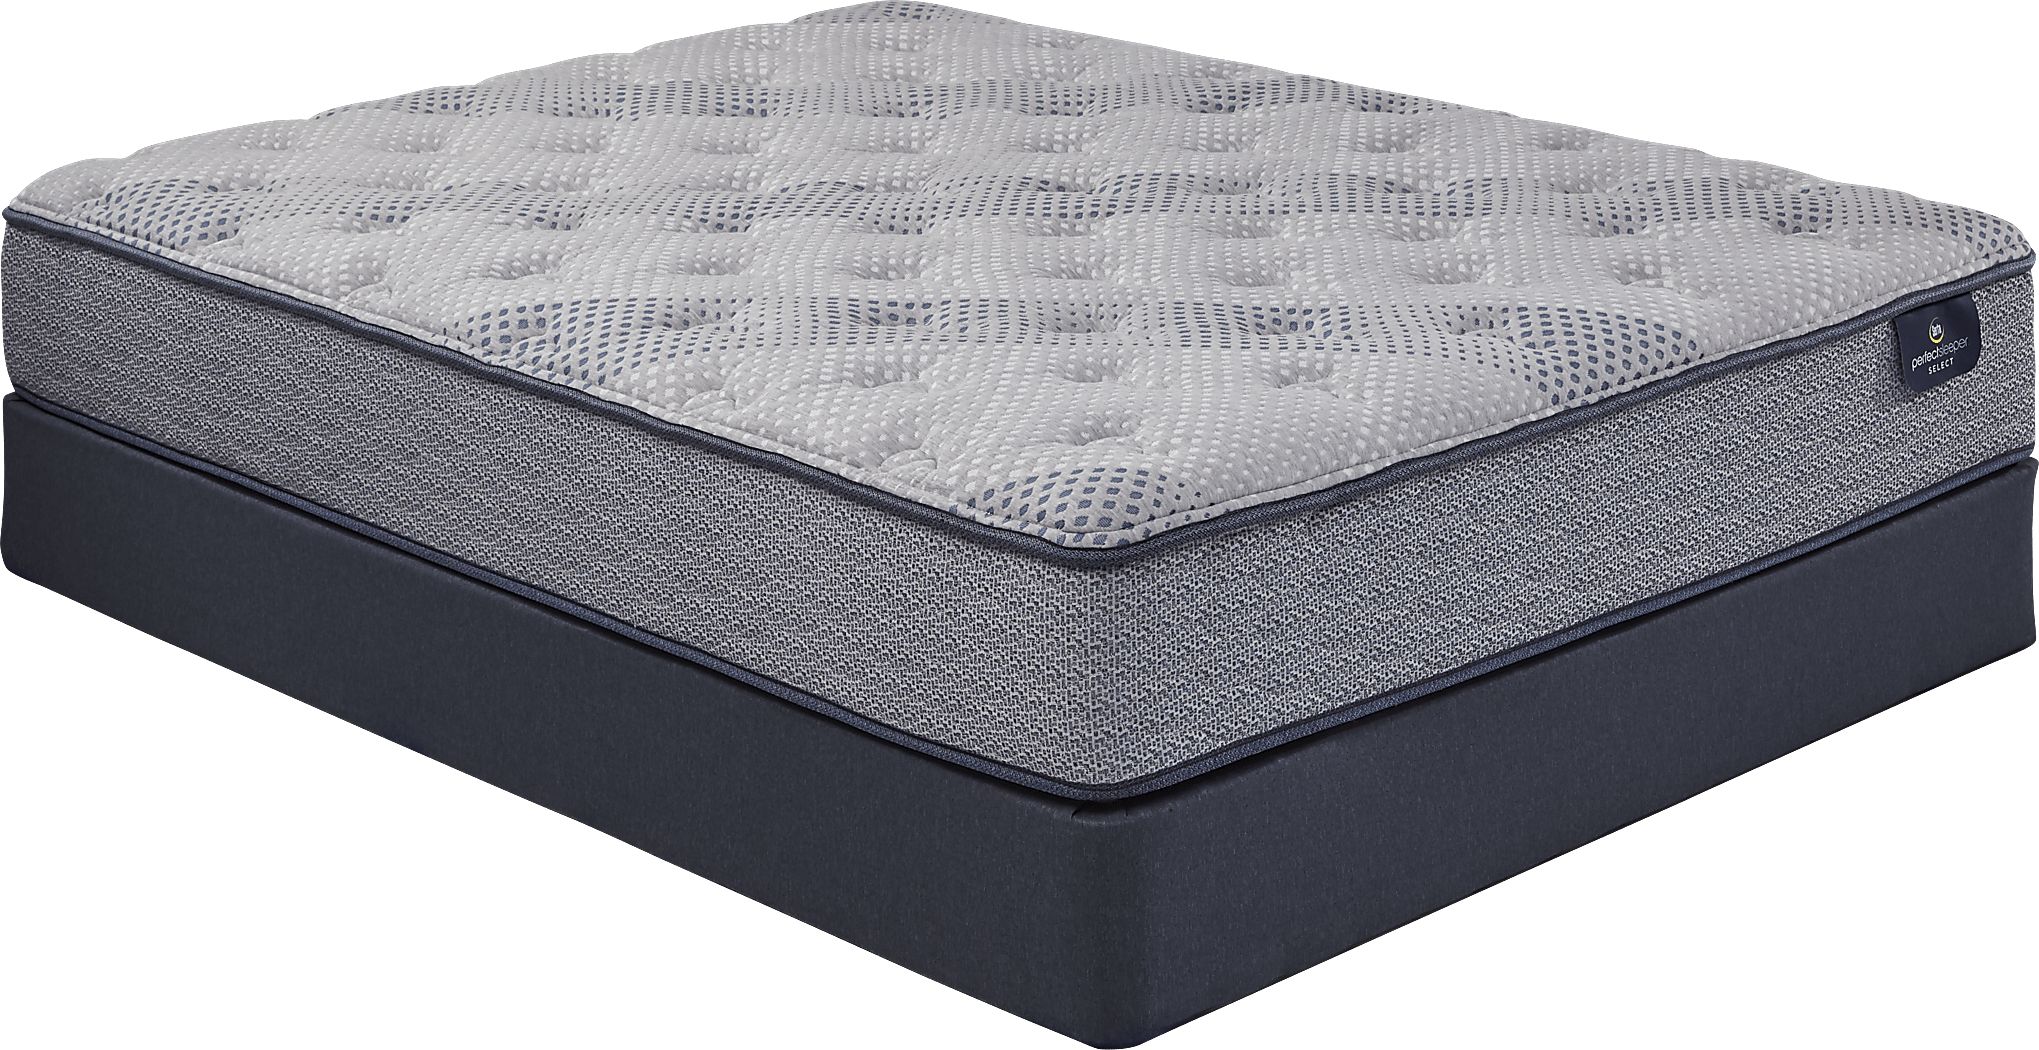 serta perfect sleeper echo springs queen mattress set